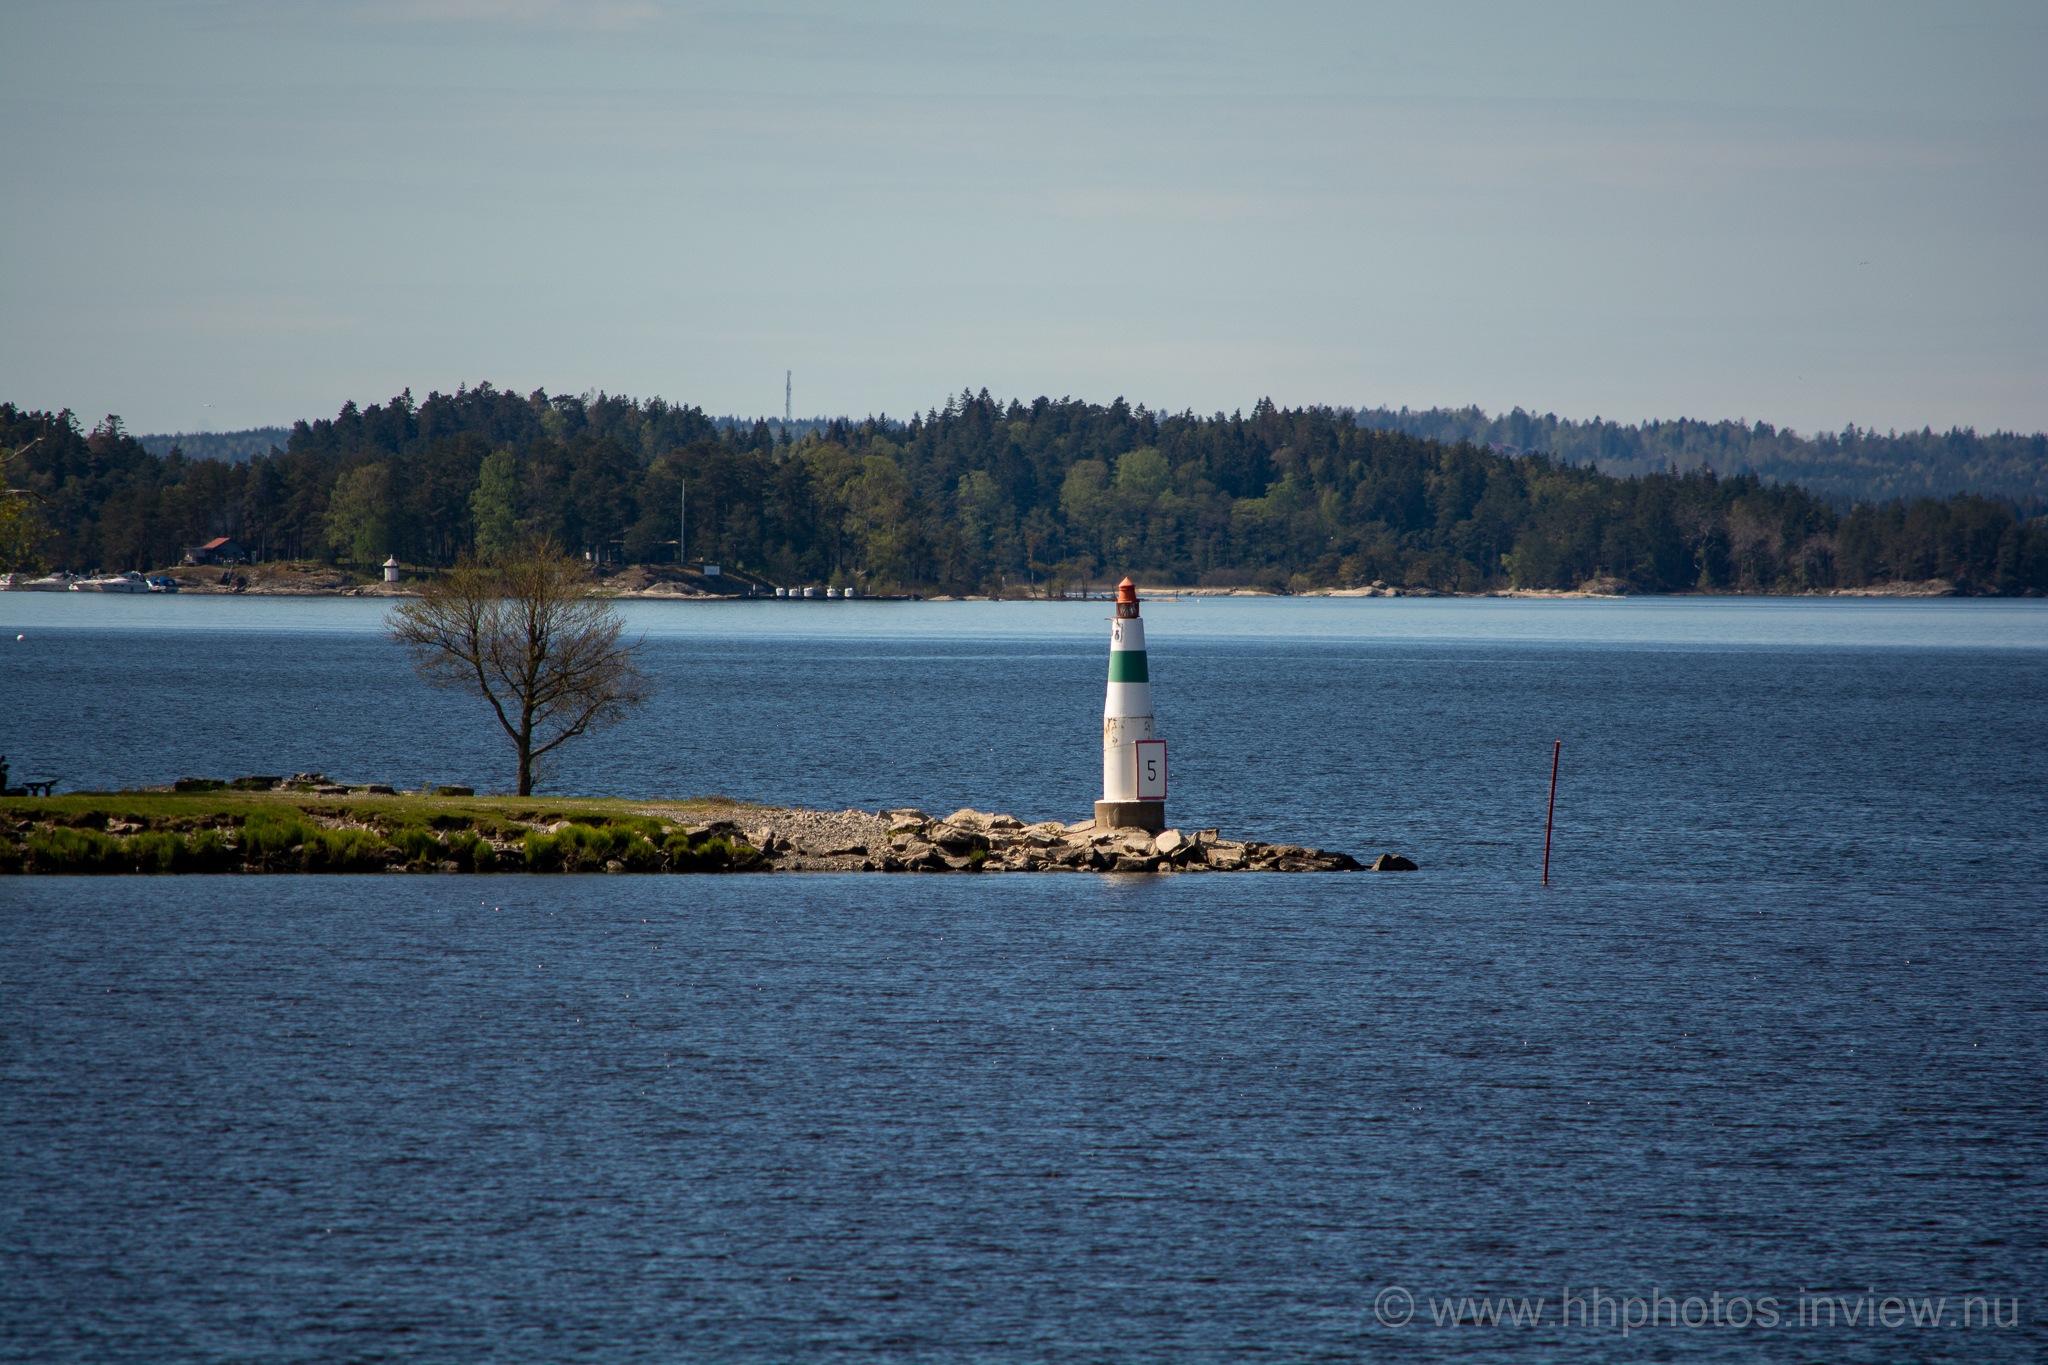 Fyr i Alingsås / Lighthouse in Alingsås